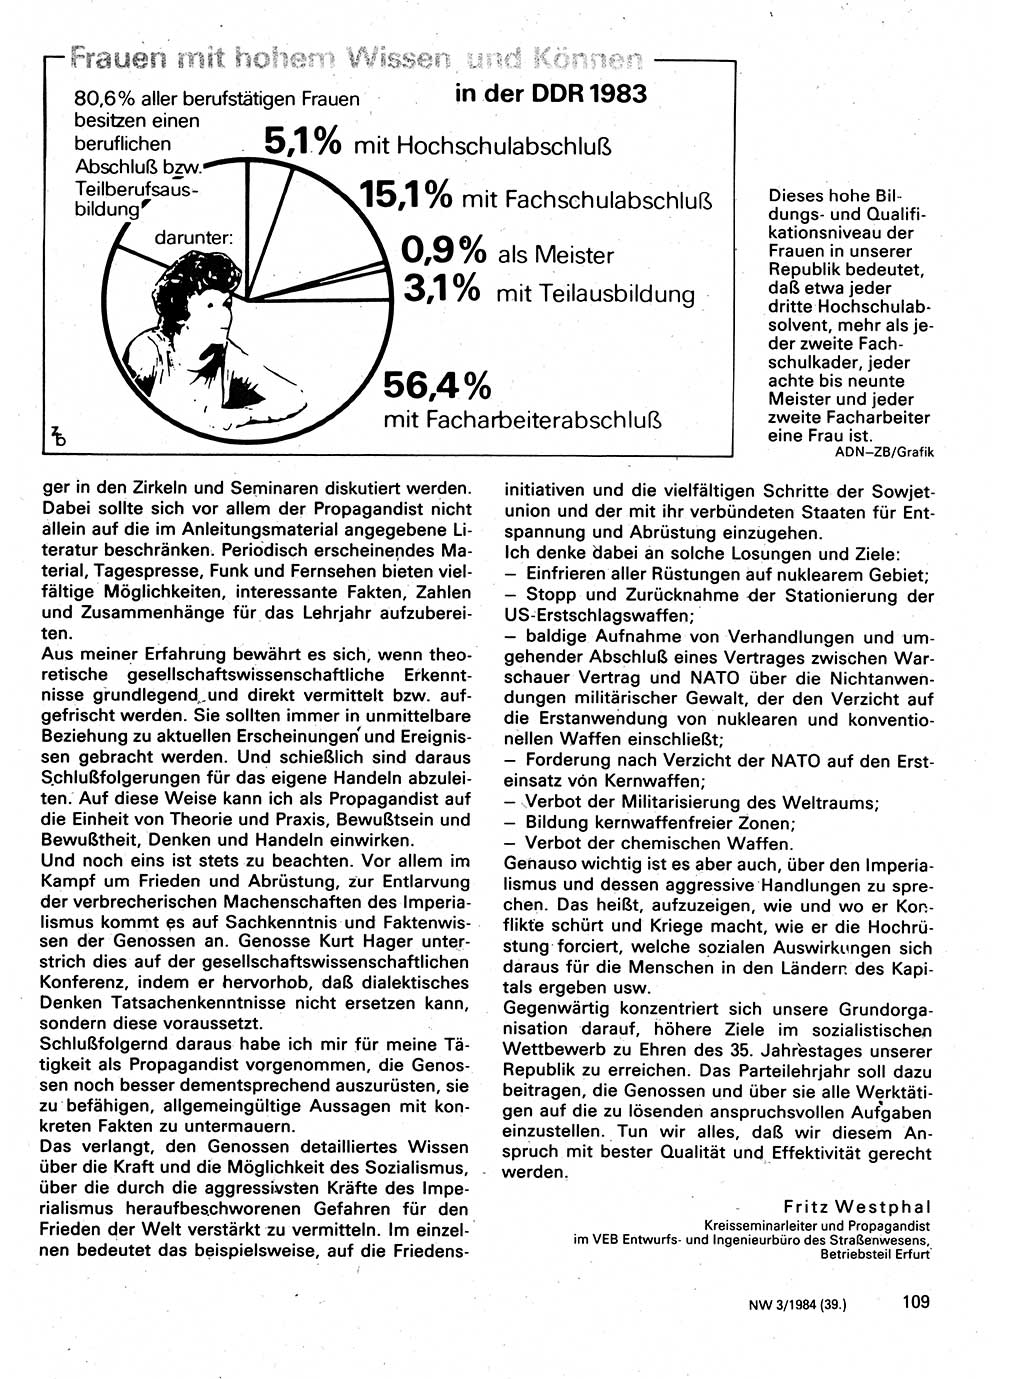 Neuer Weg (NW), Organ des Zentralkomitees (ZK) der SED (Sozialistische Einheitspartei Deutschlands) für Fragen des Parteilebens, 39. Jahrgang [Deutsche Demokratische Republik (DDR)] 1984, Seite 109 (NW ZK SED DDR 1984, S. 109)